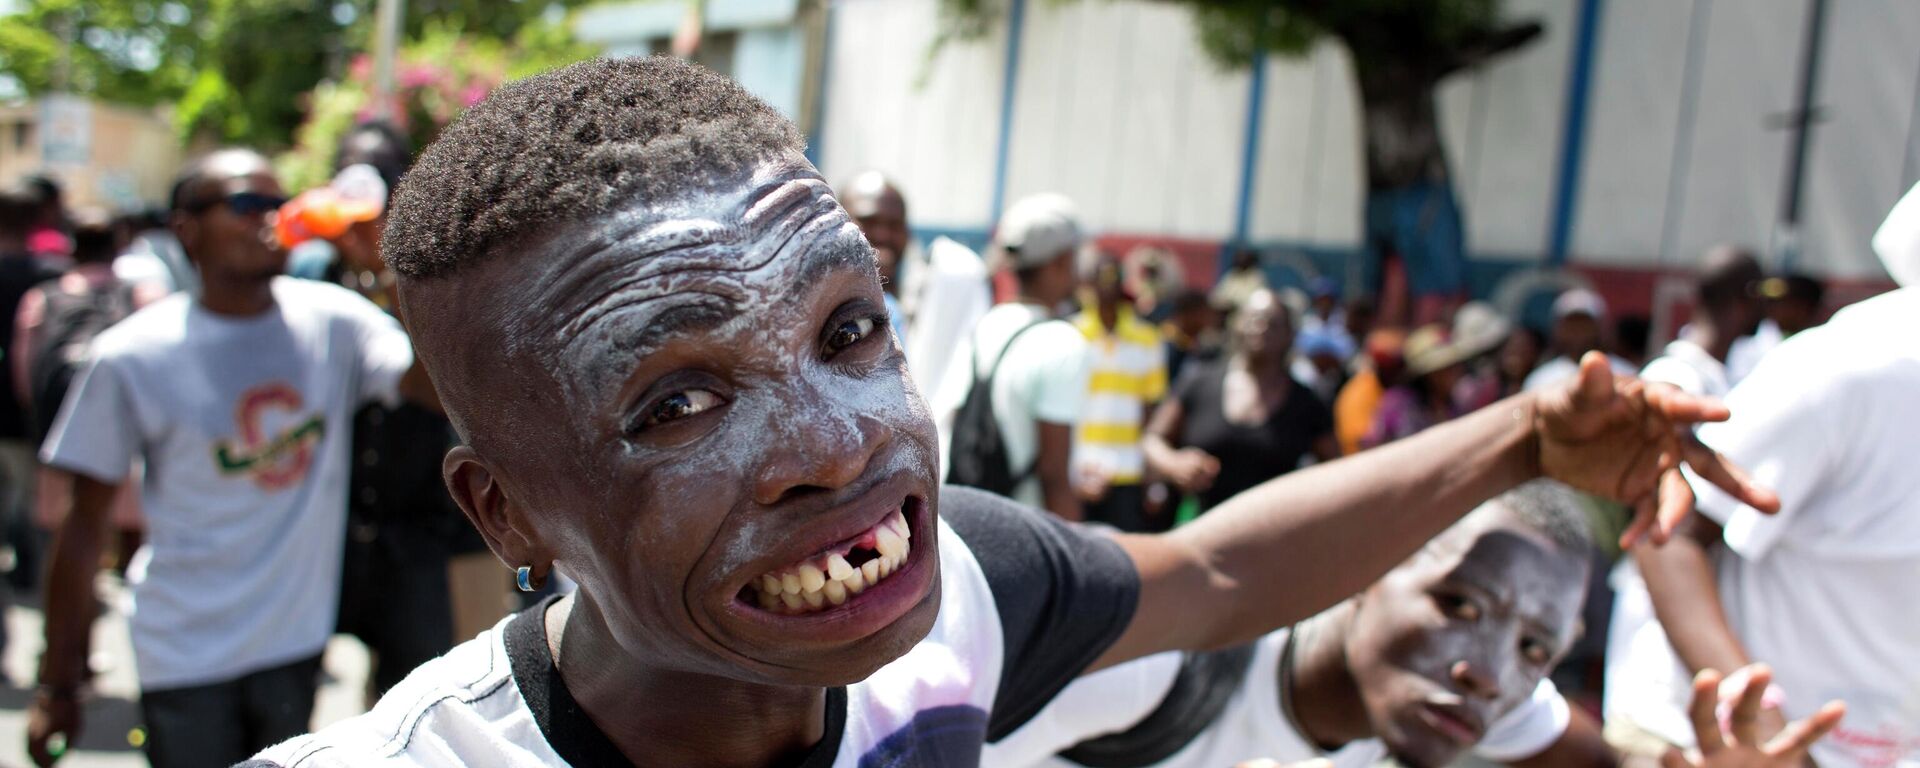 Jóvenes haciendo pose de zombi en Haití - Sputnik Mundo, 1920, 08.04.2022